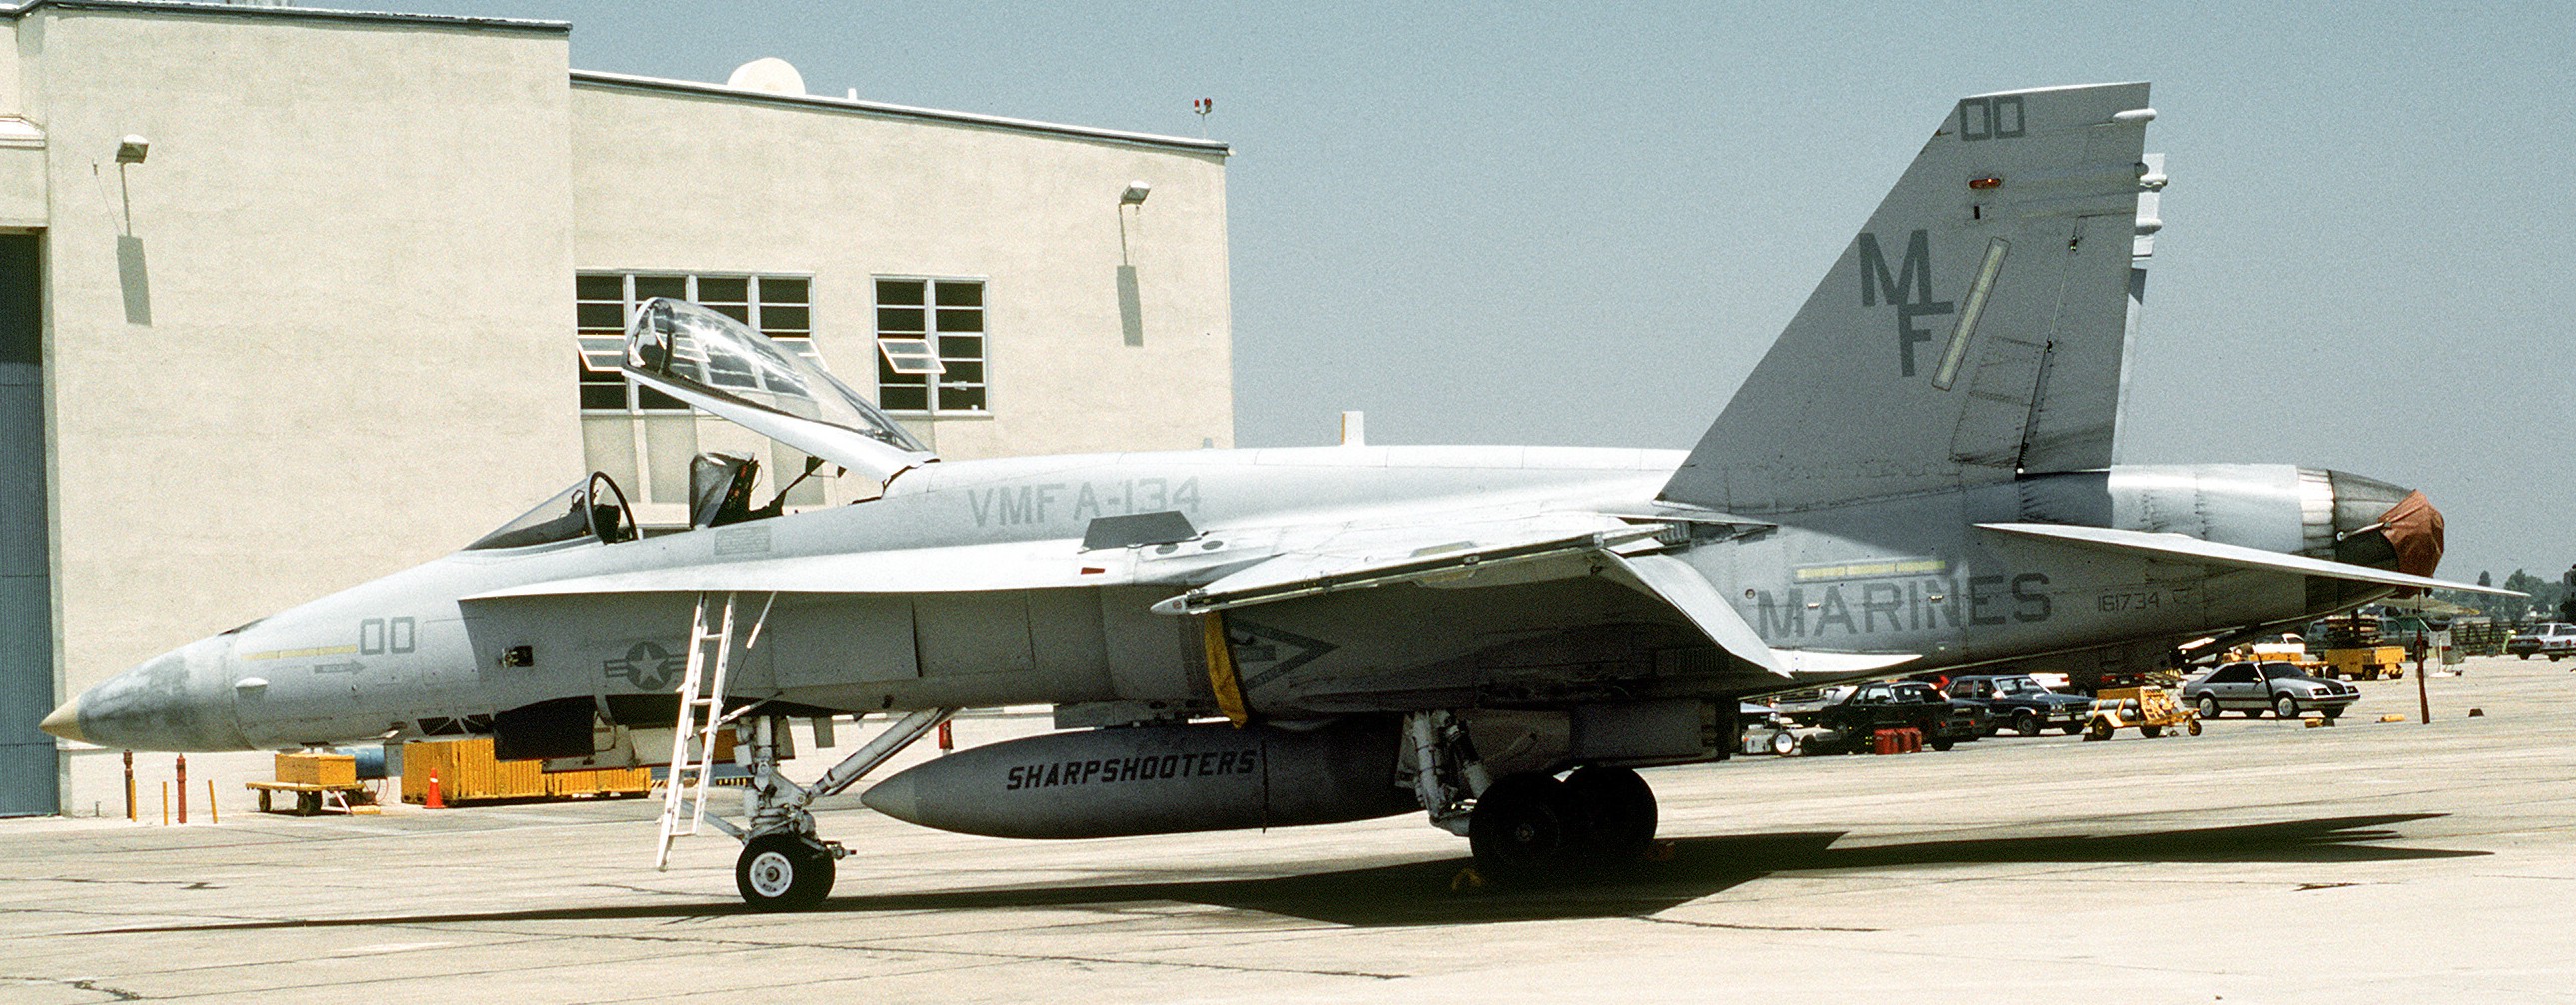 vmfa-134 smoke marine fighter attack squadron usmc f/a-18 hornet mcas el toro california 03